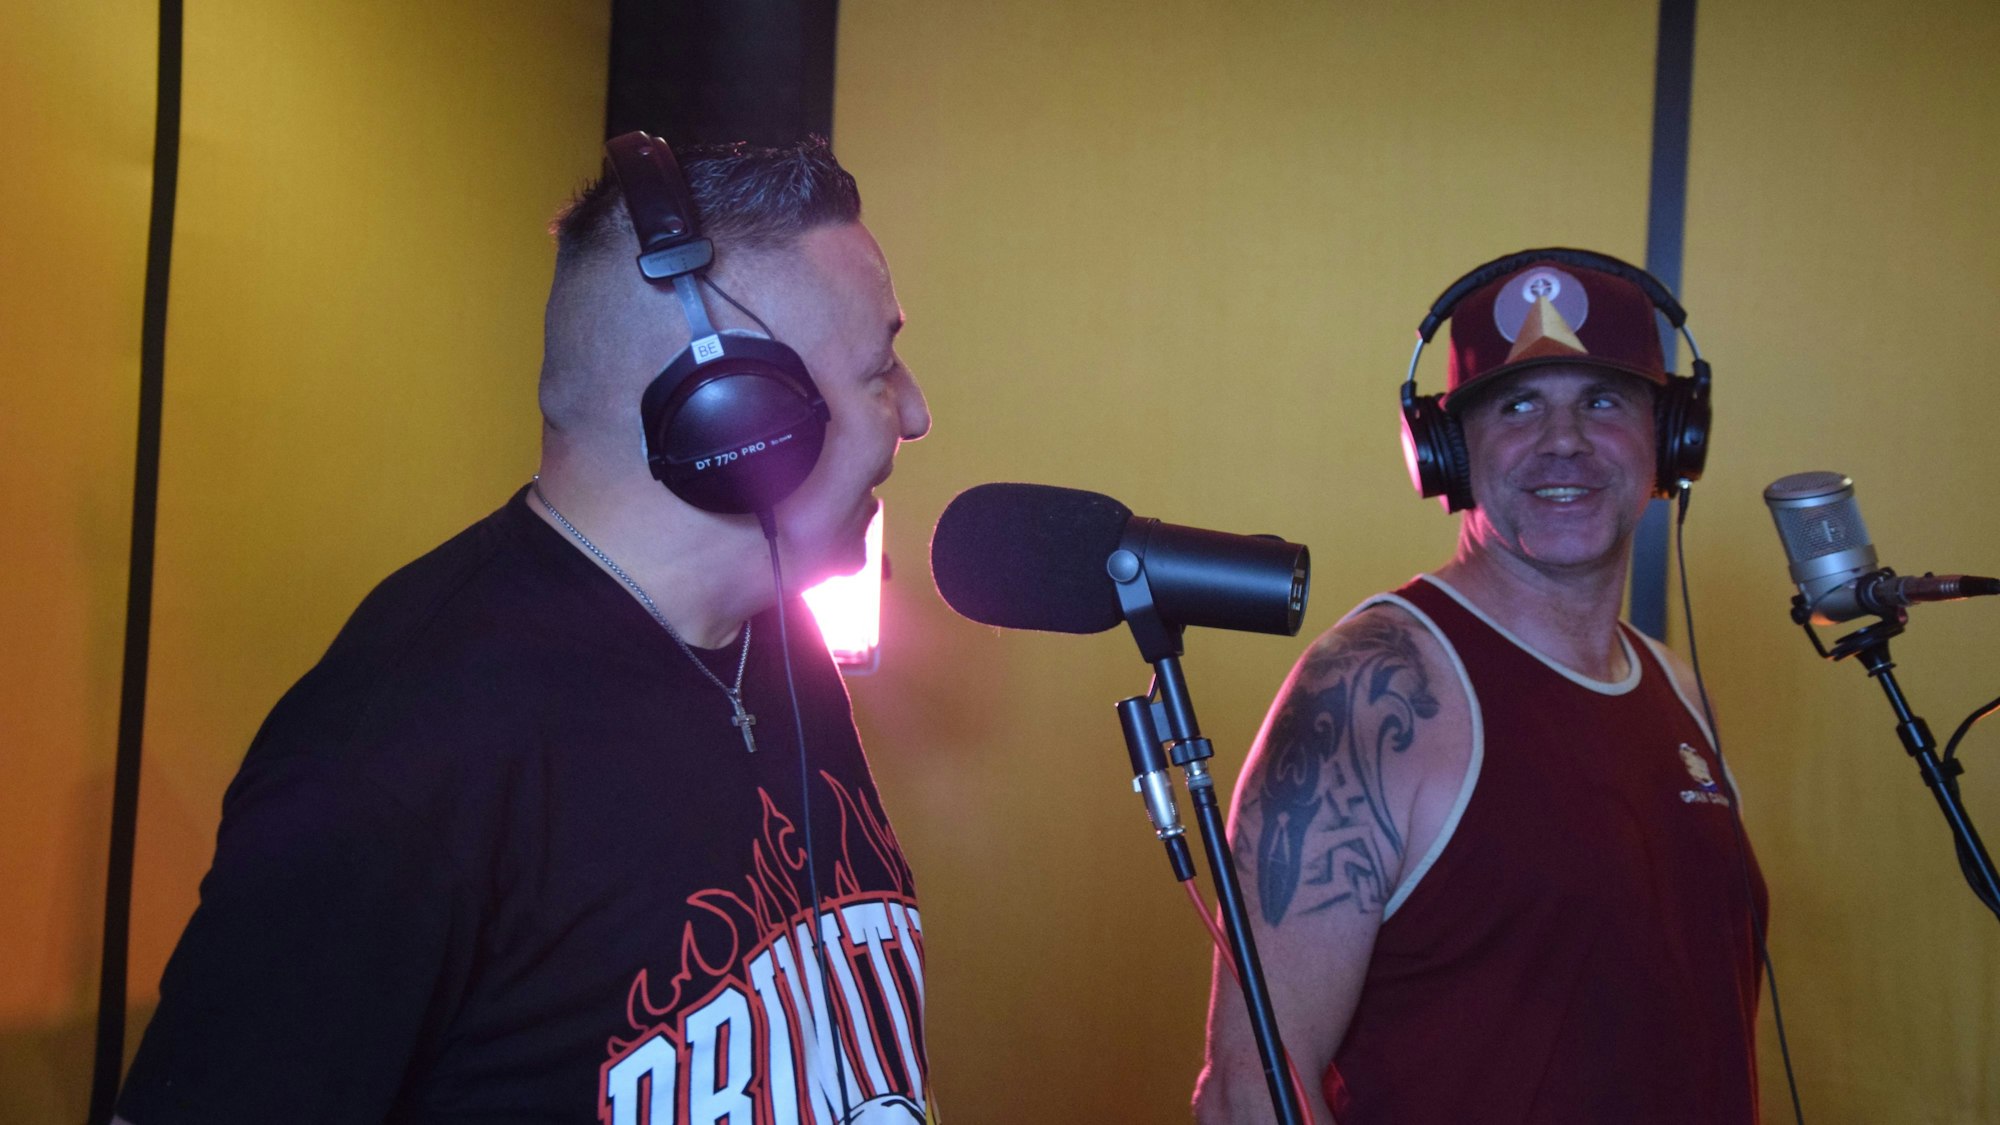 Die Rapper Adelsmann (links) und Hans Solo stehen gemeinsam im Studio und gucken sich, lächelnd an.